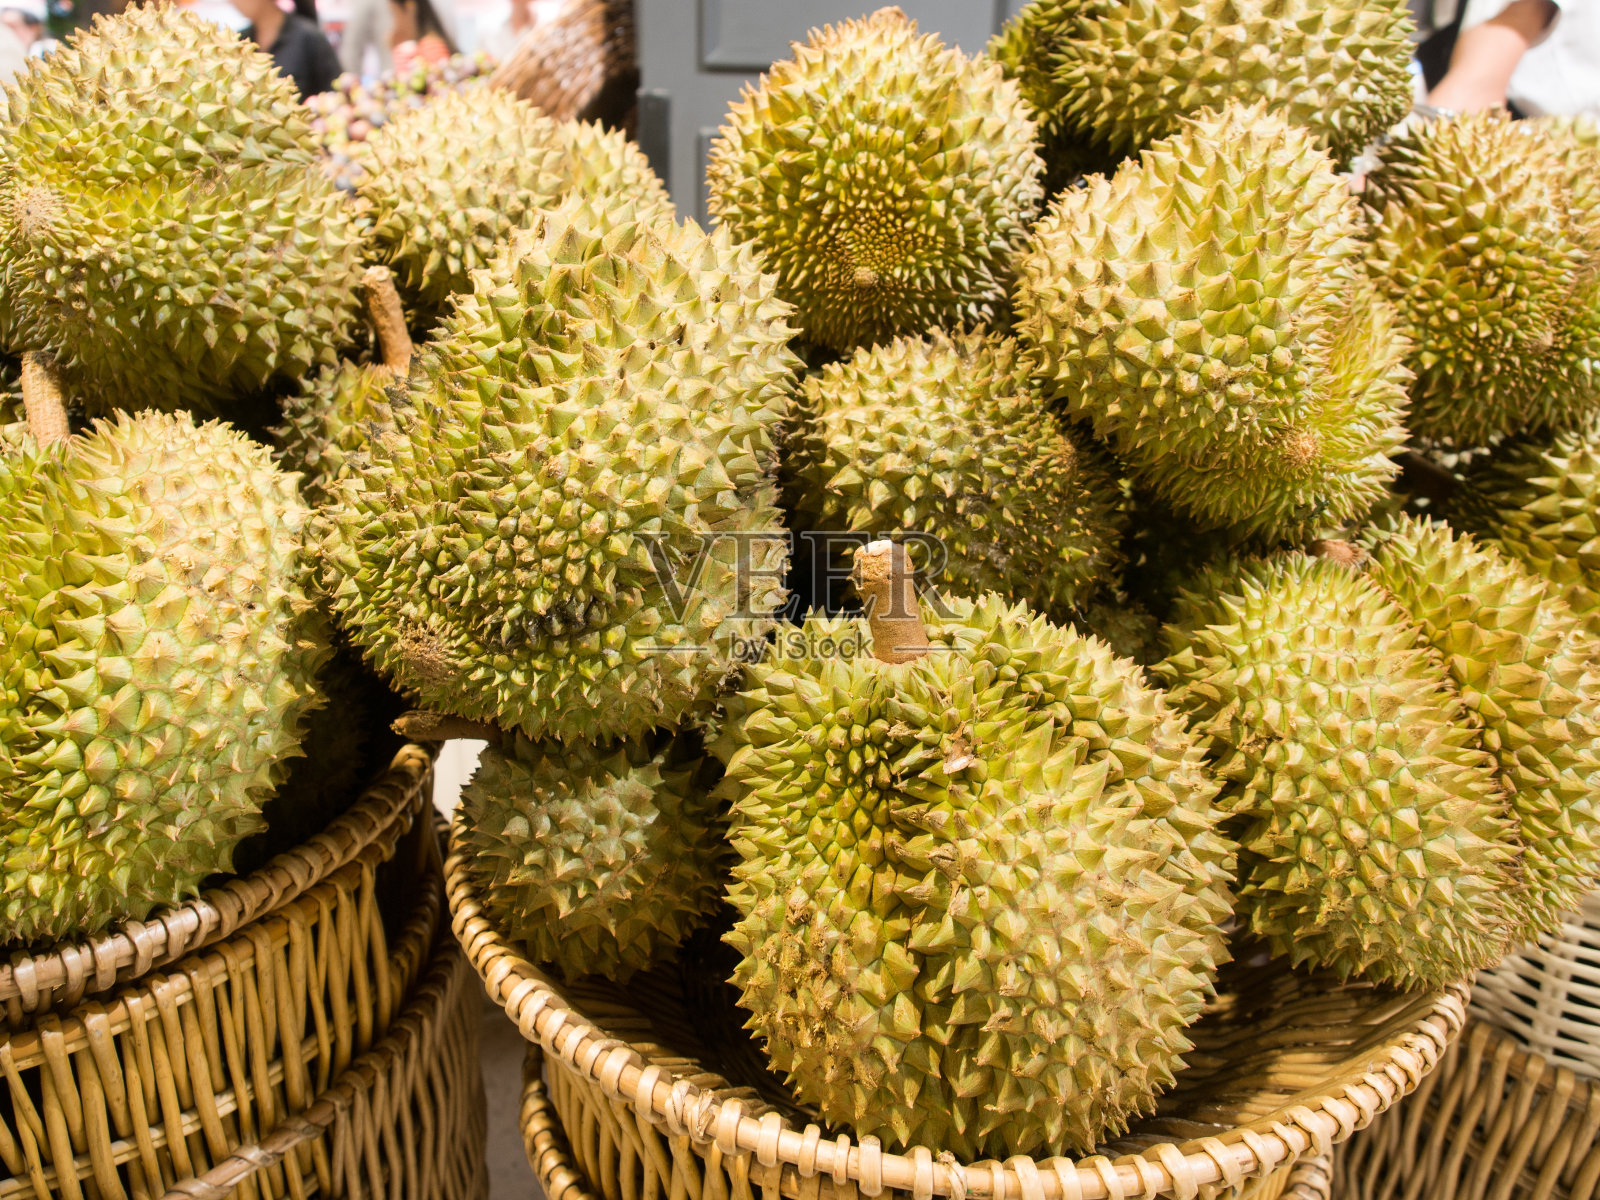 榴莲是泰国水果之王。照片摄影图片